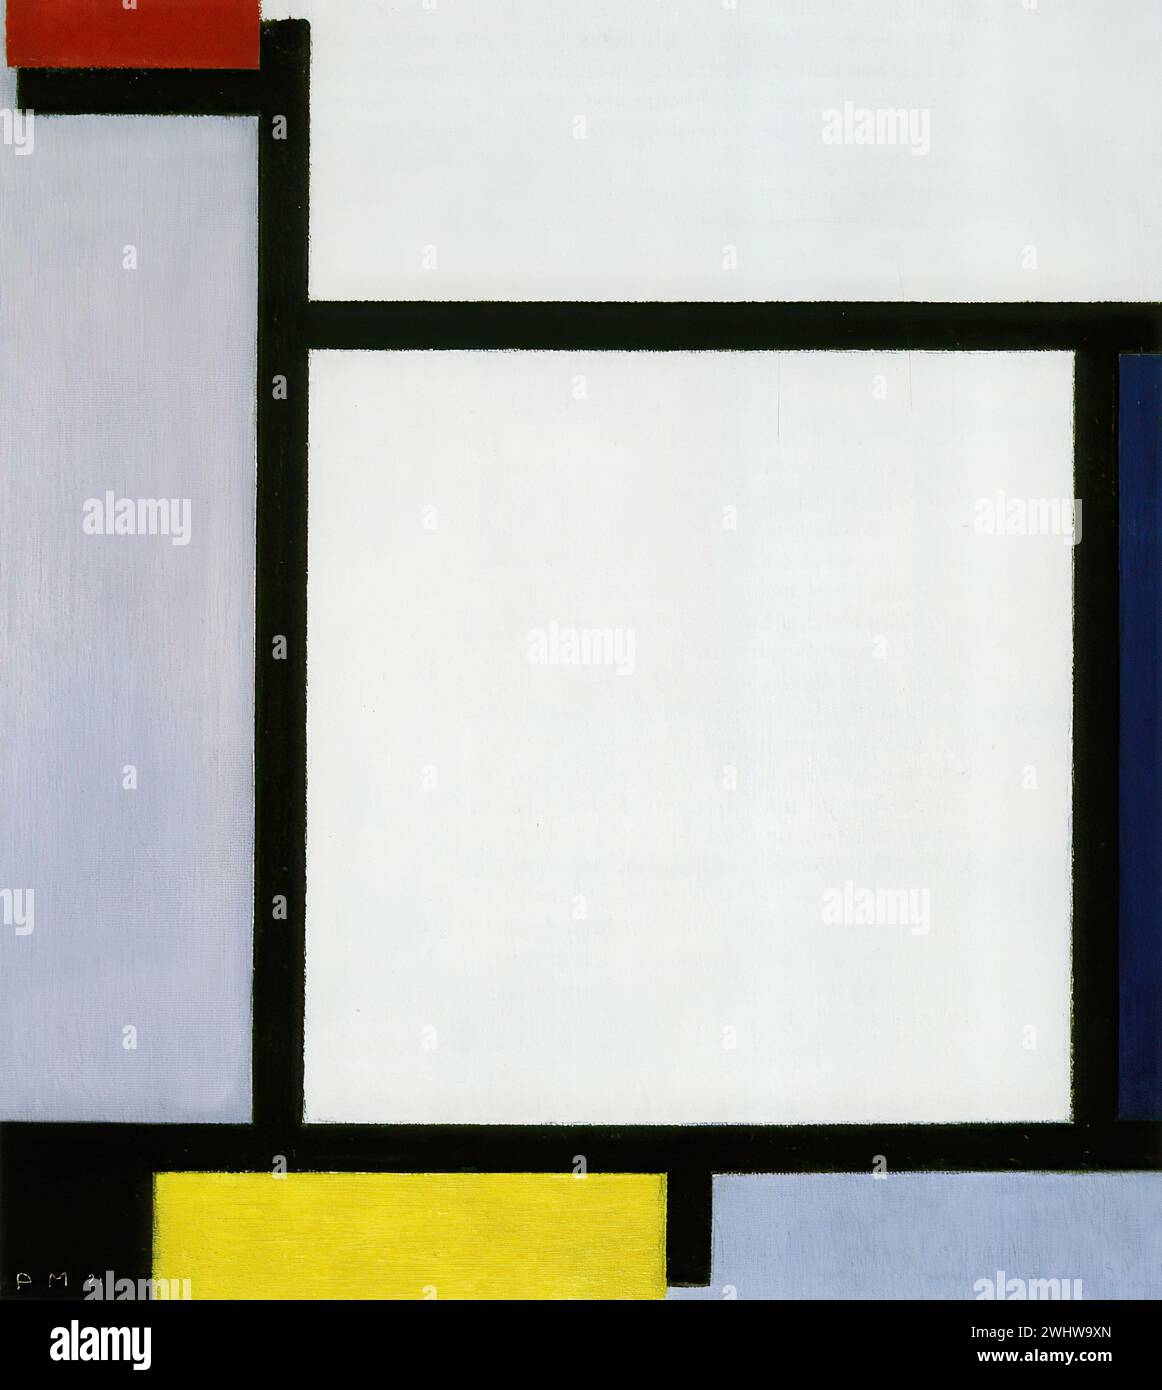 Piet Mondrian - Composition avec rouge, bleu, noir, jaune et gris Stock Photo